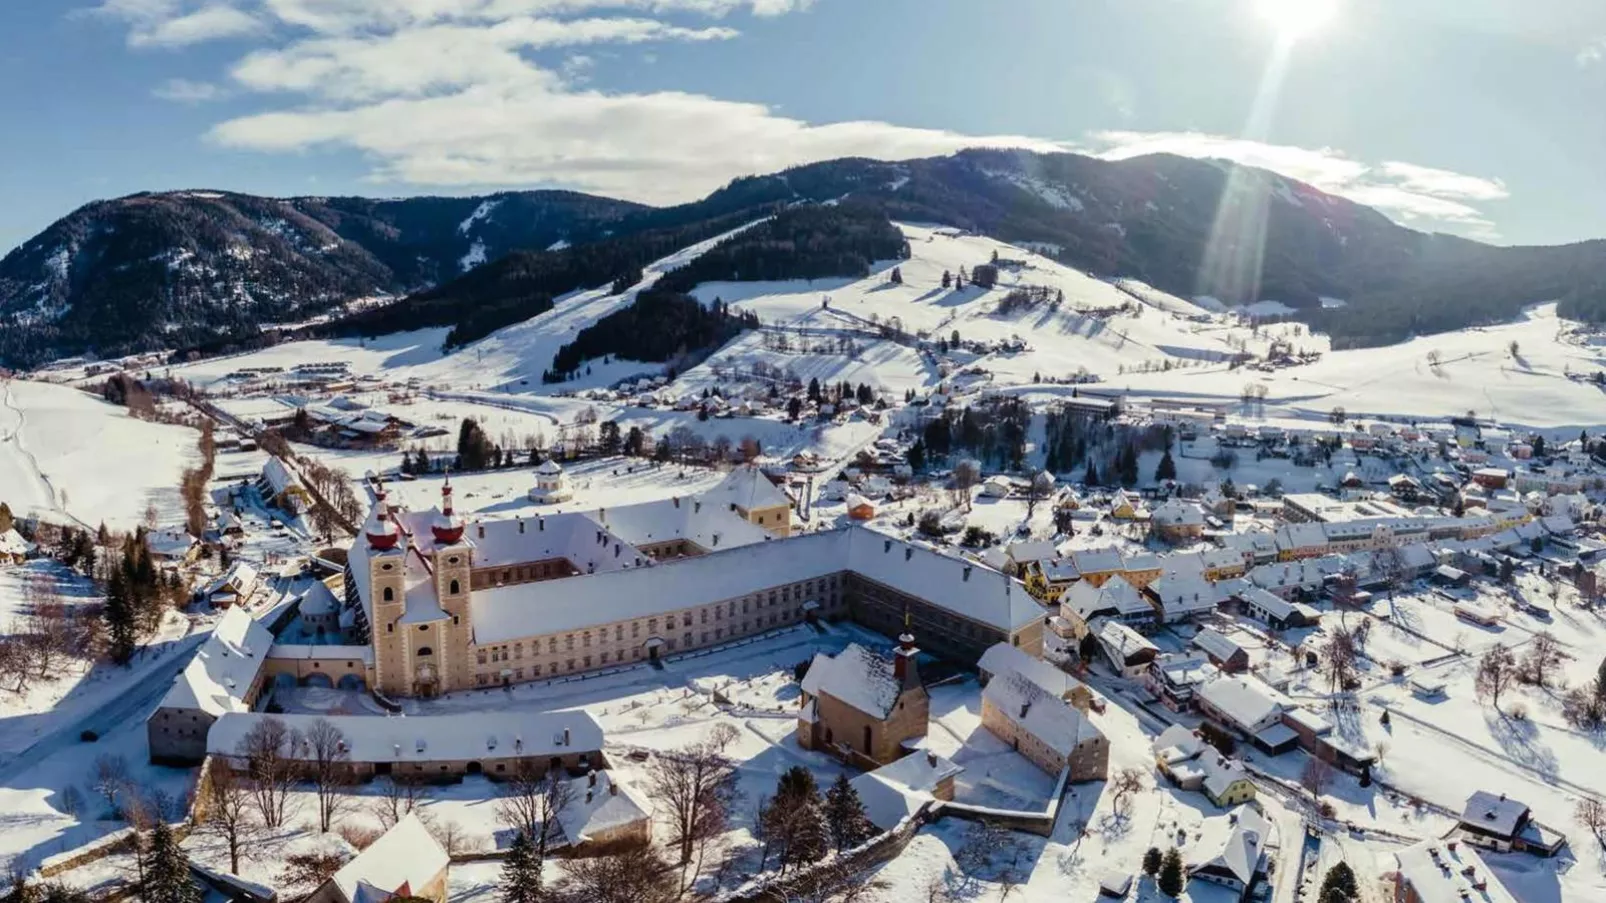 Grebenzen Lodge Hirsch-Gebied winter 5km